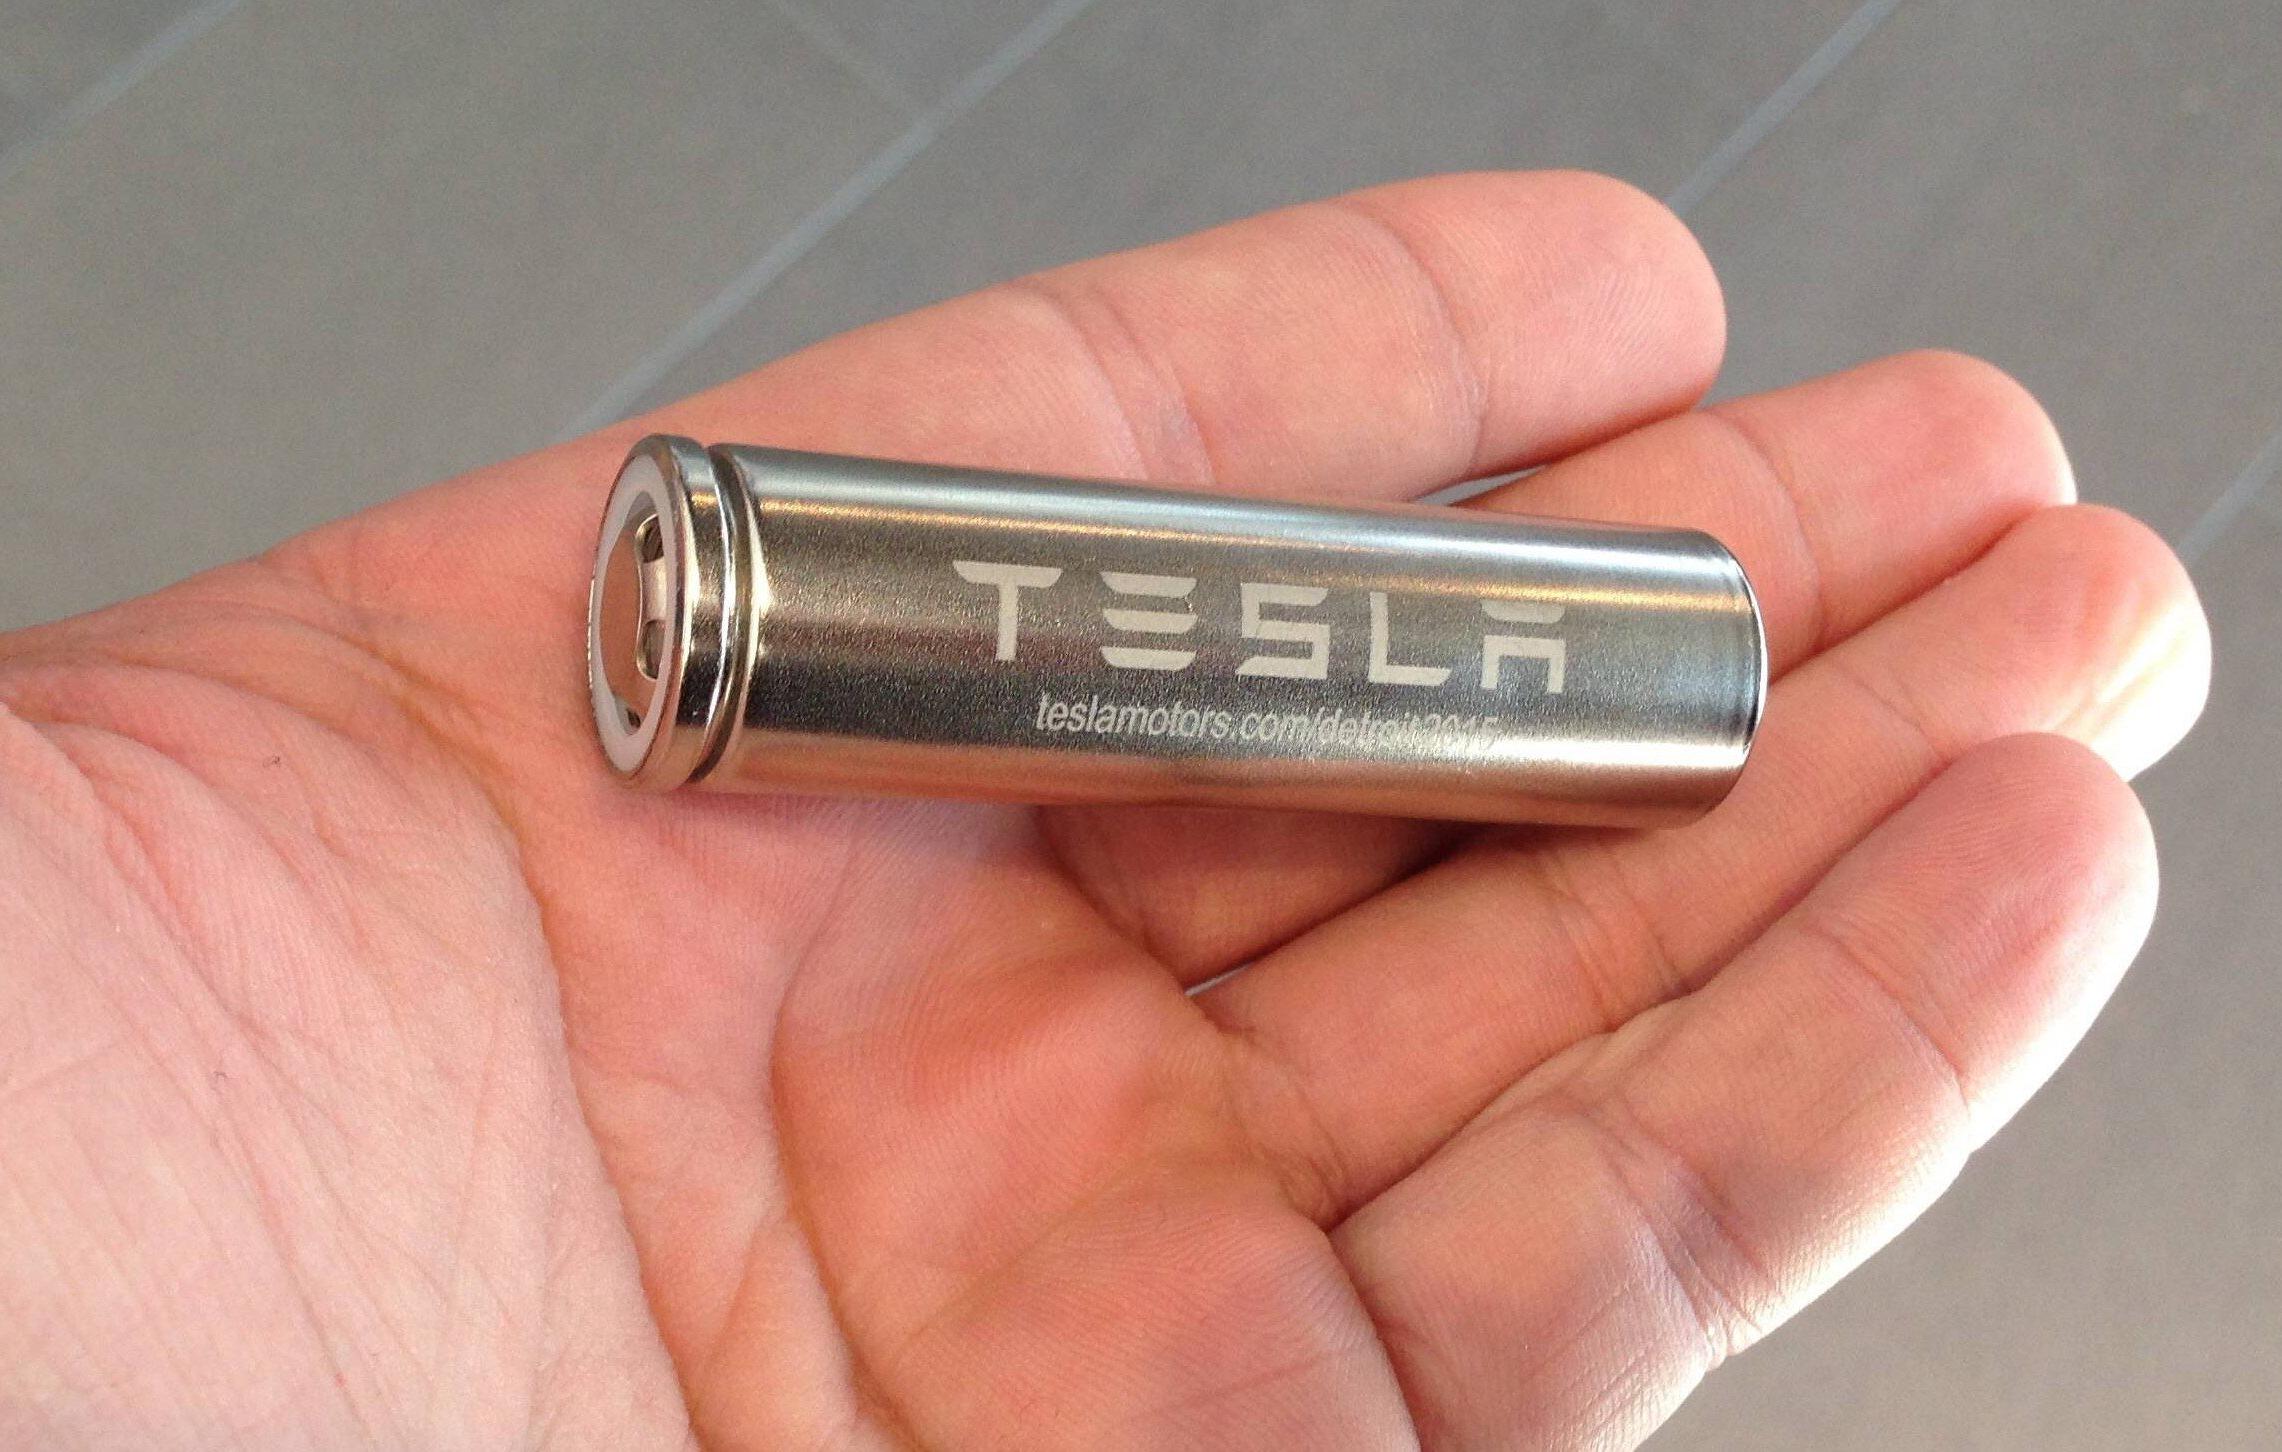 Surgem mais detalhes sobre a super bateria da Tesla